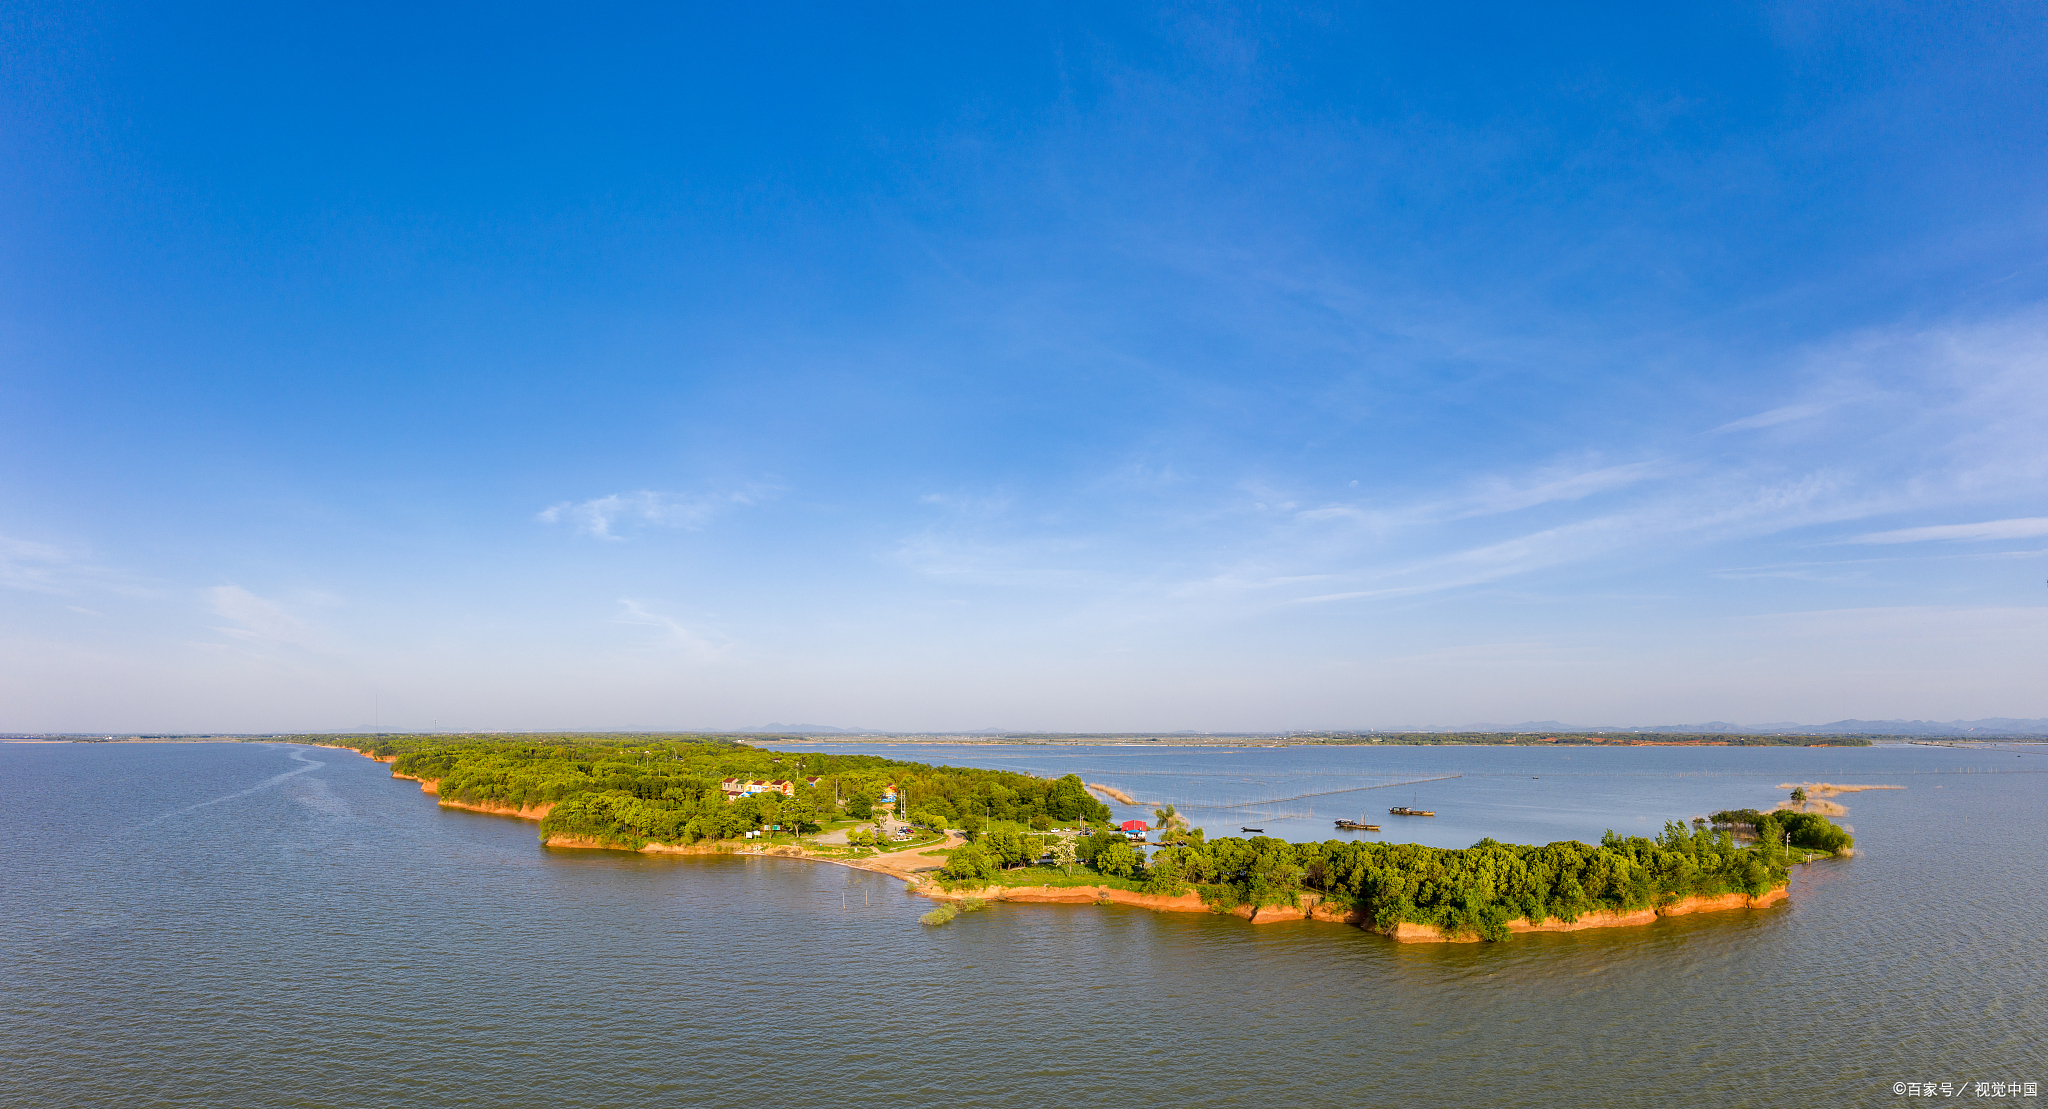 成子湖,位于江苏省宿迁市泗阳县,是一个颇具特色的风景区